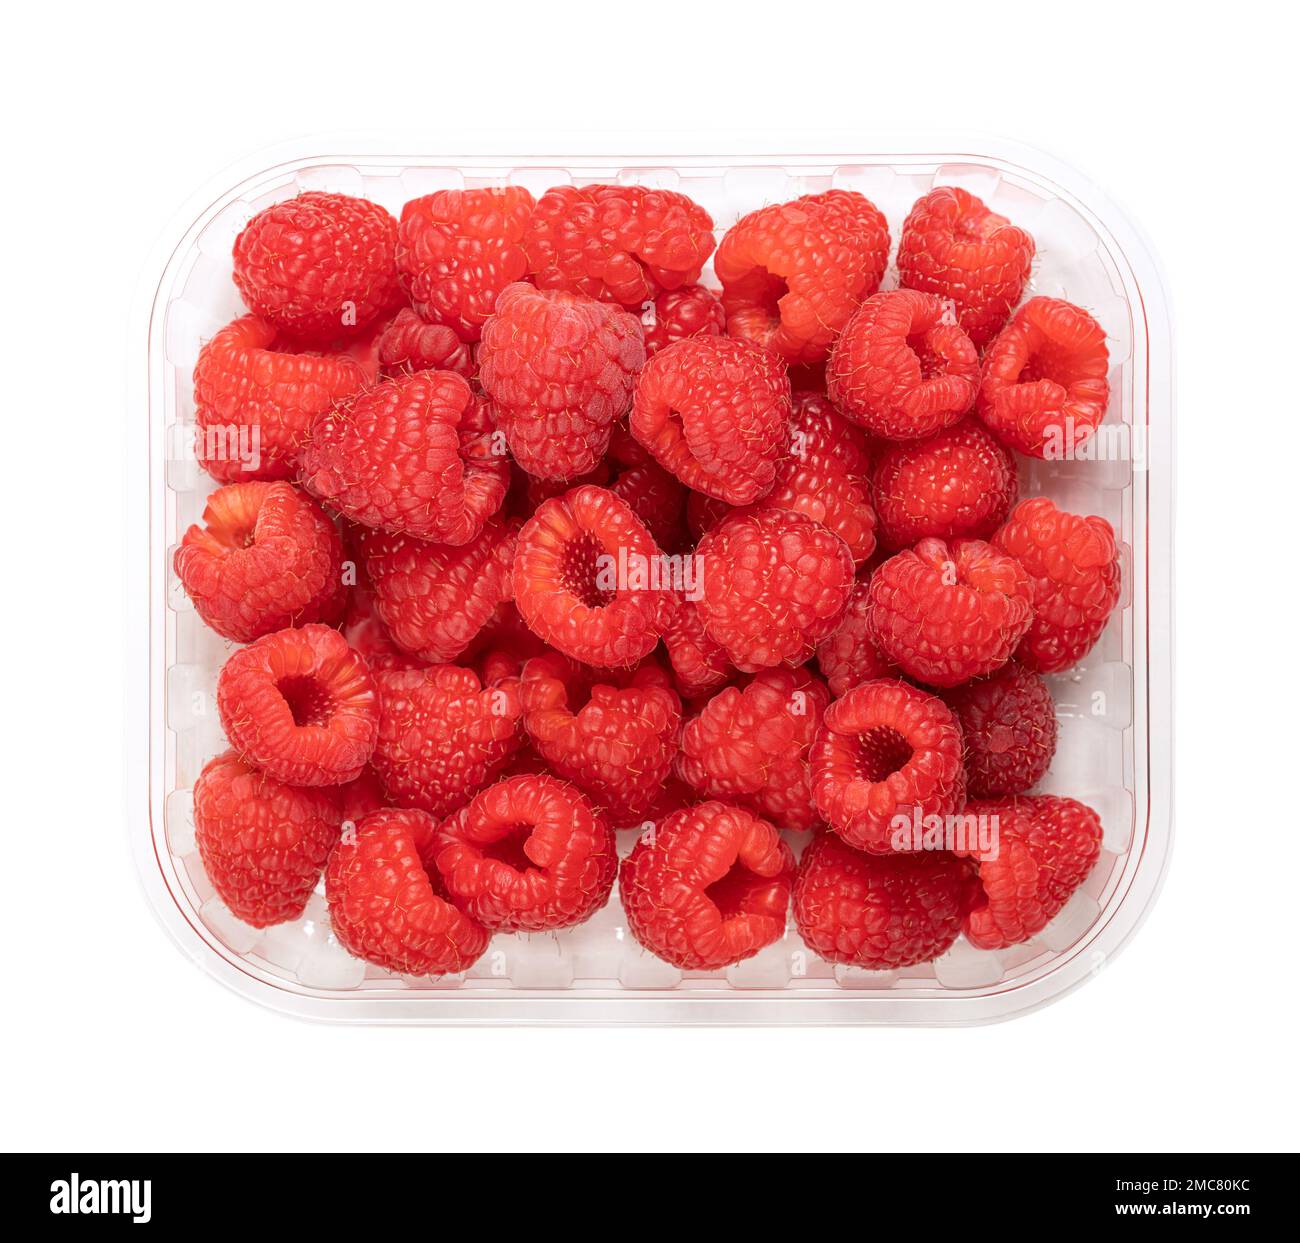 Lamponi freschi interi, in un fusto di plastica trasparente, dall'alto. Frutti maturi, rossi e dolci di Rubus idaeus, il lampone europeo coltivato. Foto Stock